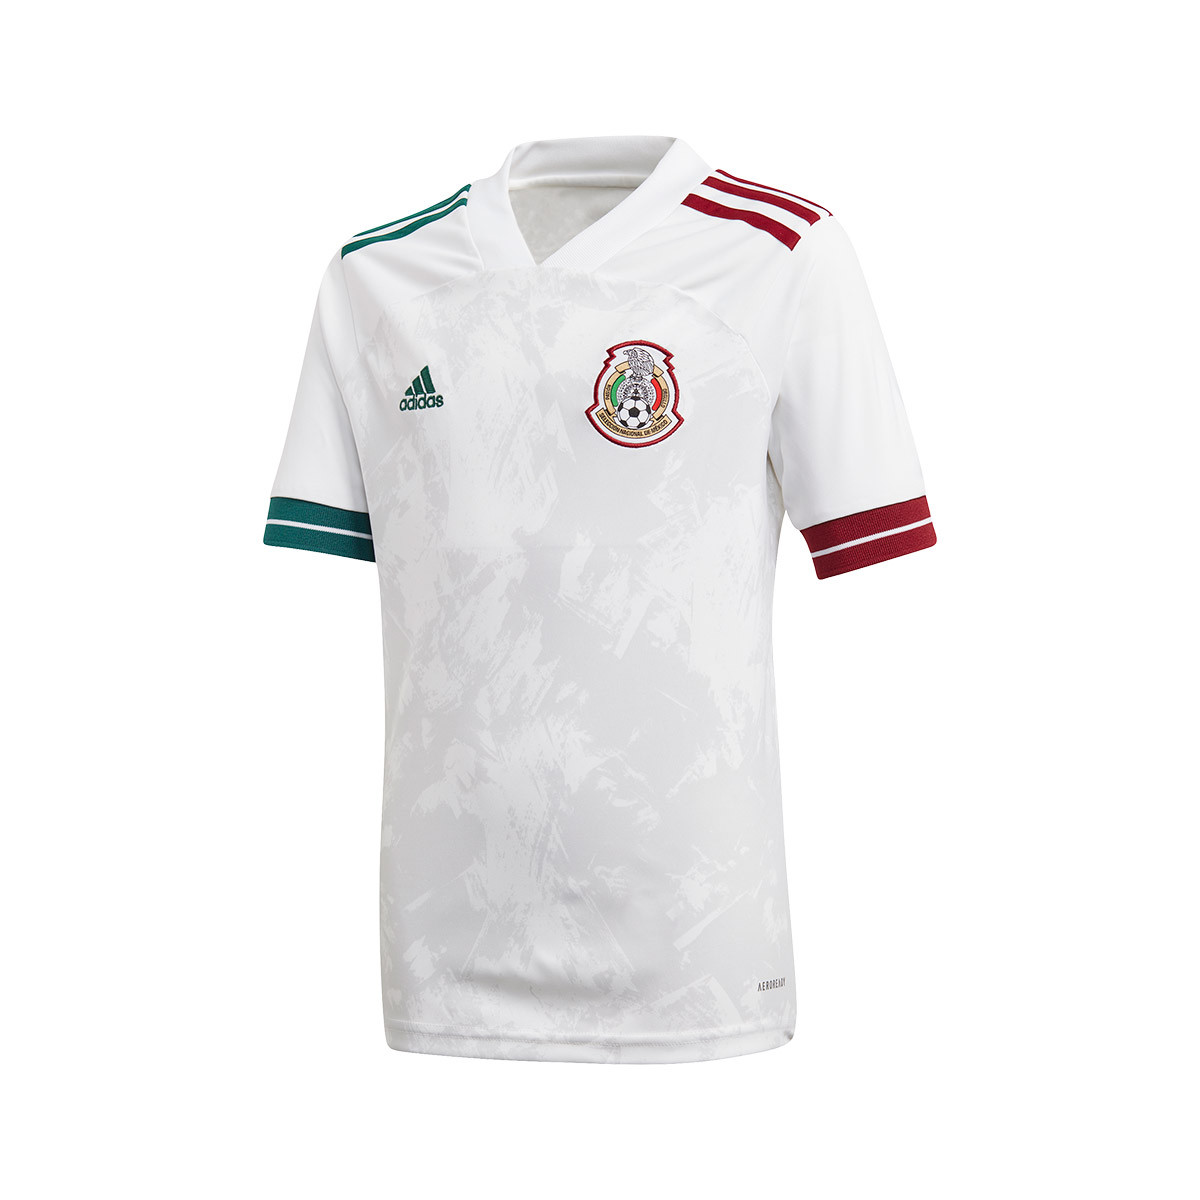 mexico football jersey